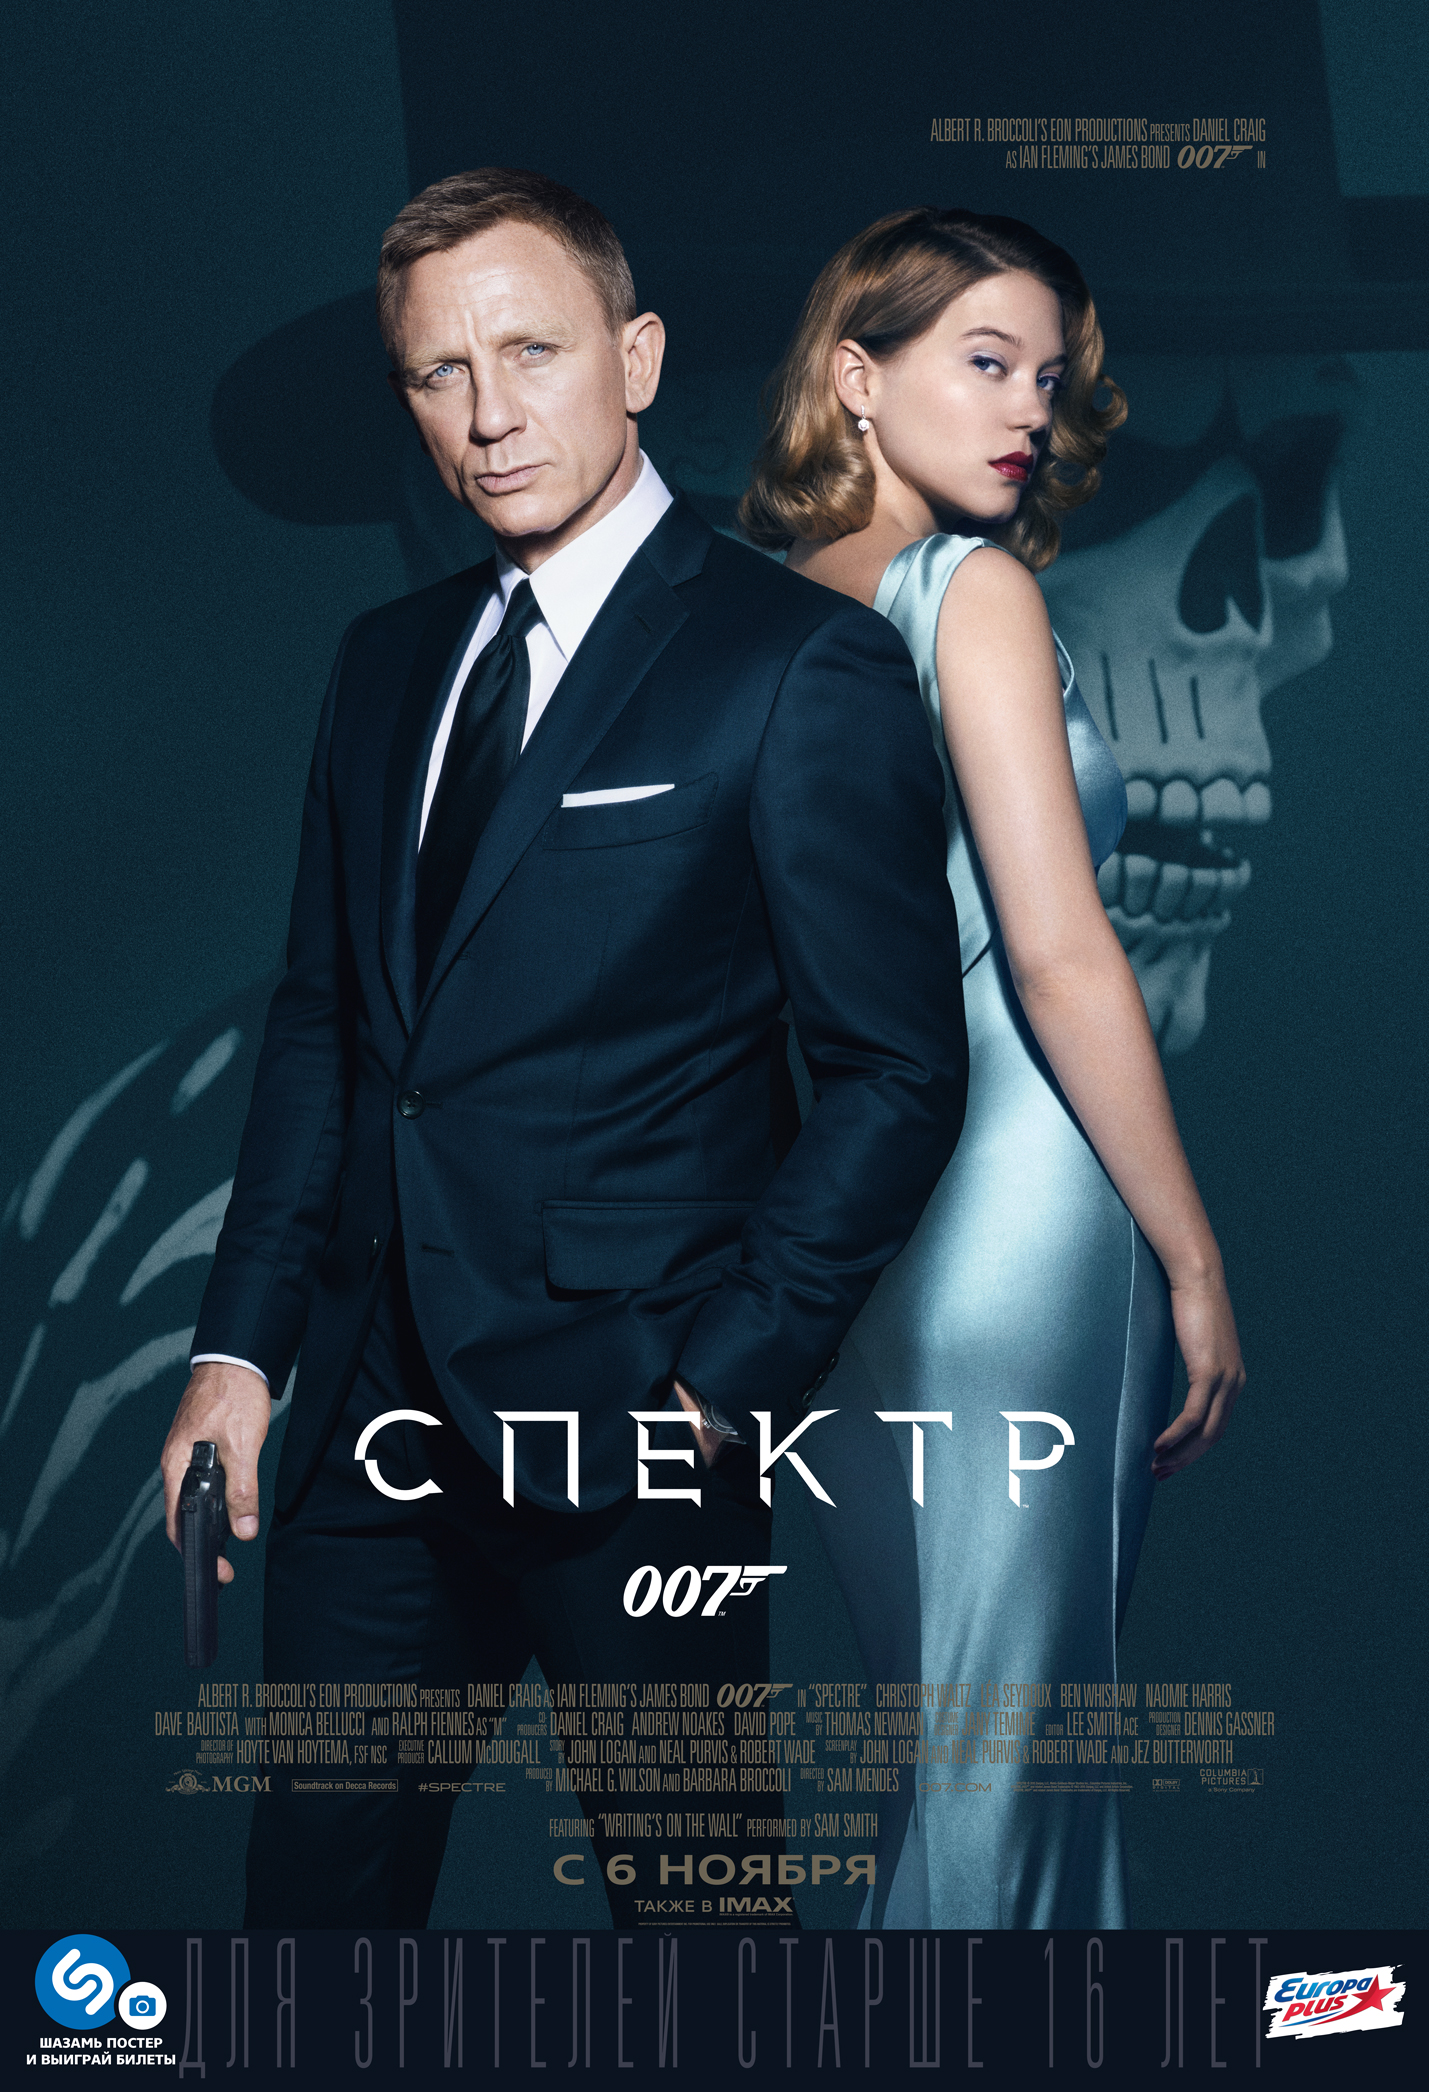 《 007:幽灵党  spectre 》电影海报 (共 15 张)